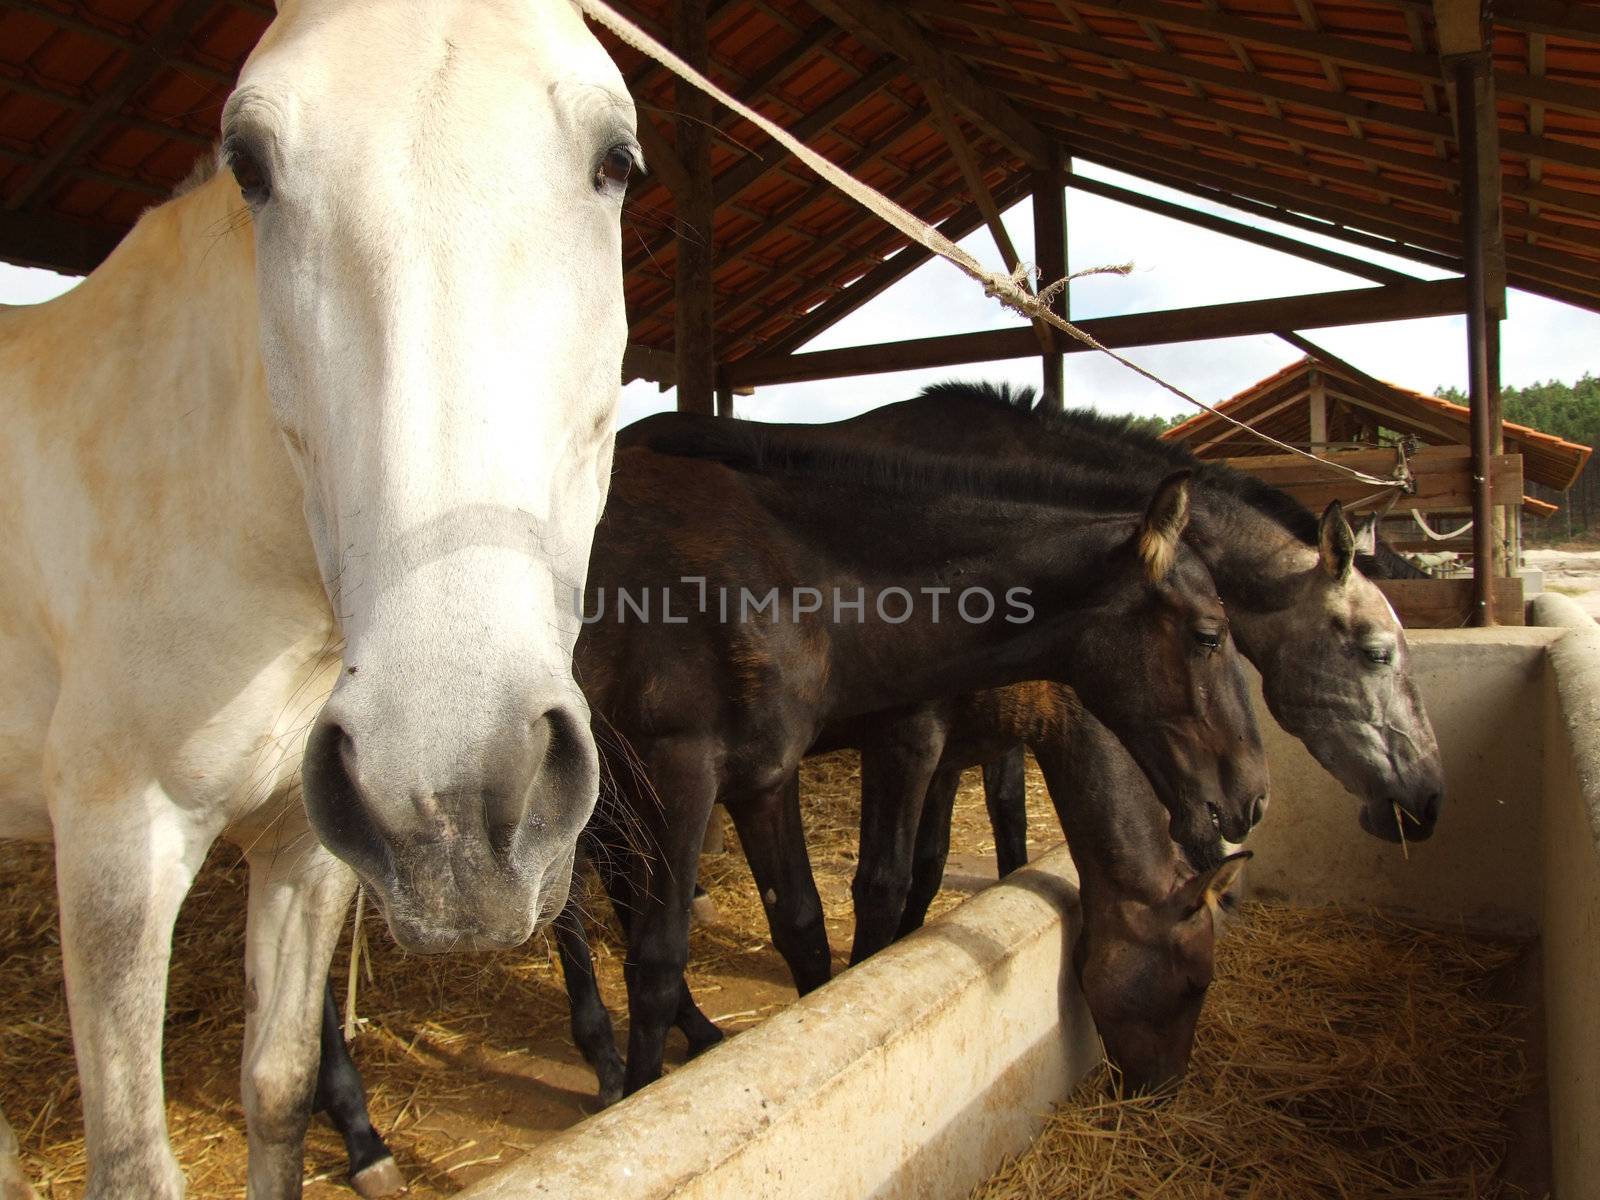 Famaly of horses feeding